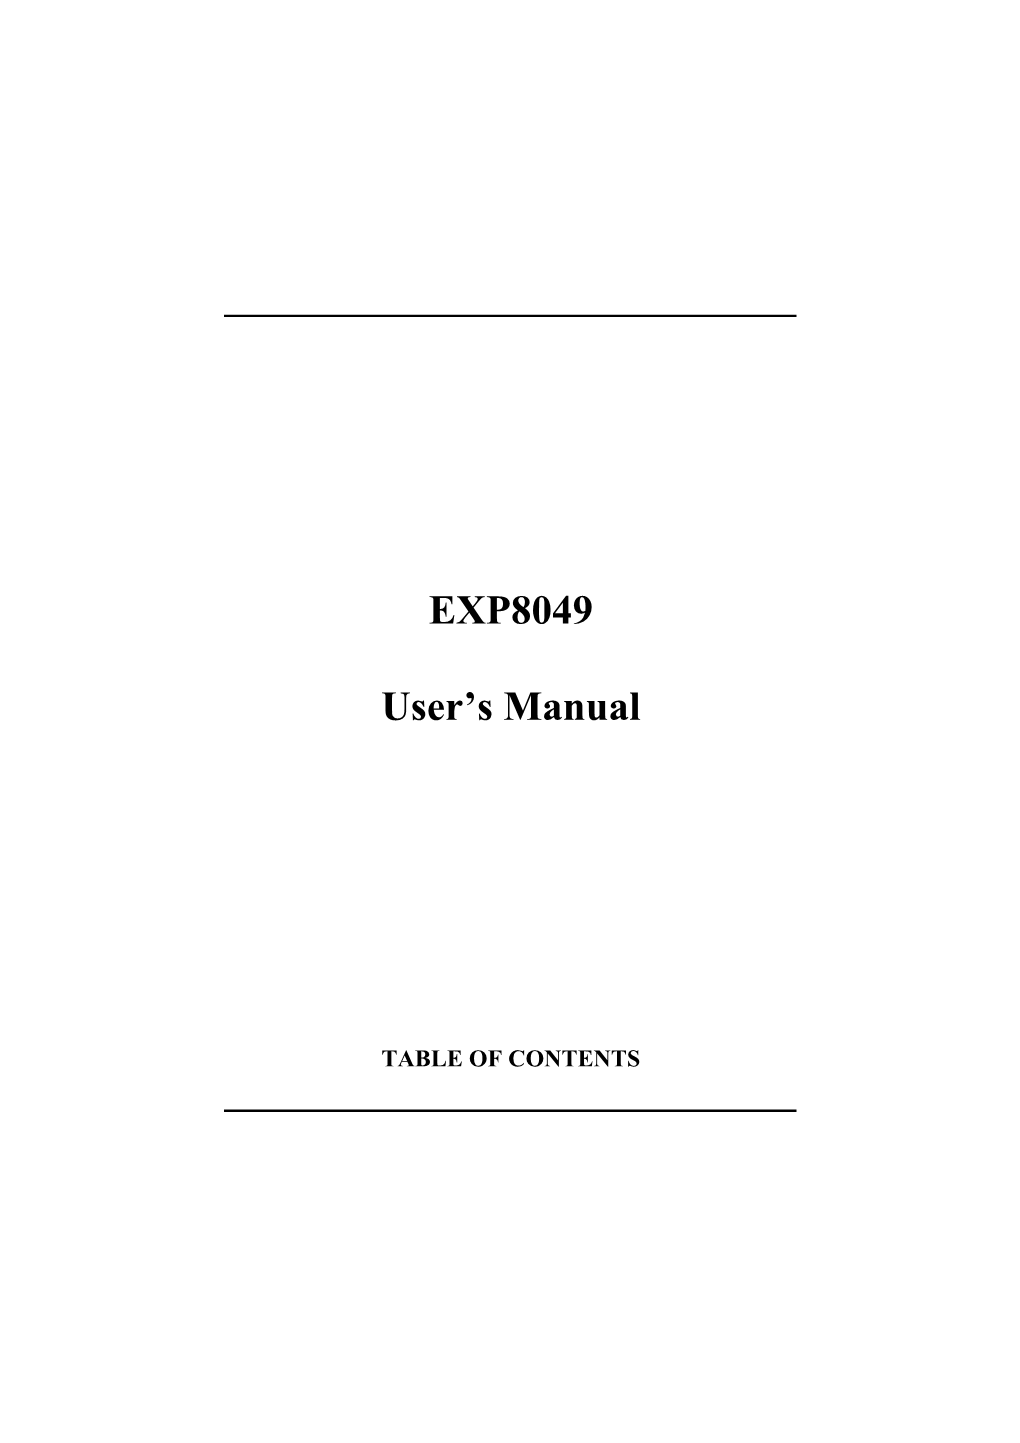 EXP8049 User's Manual